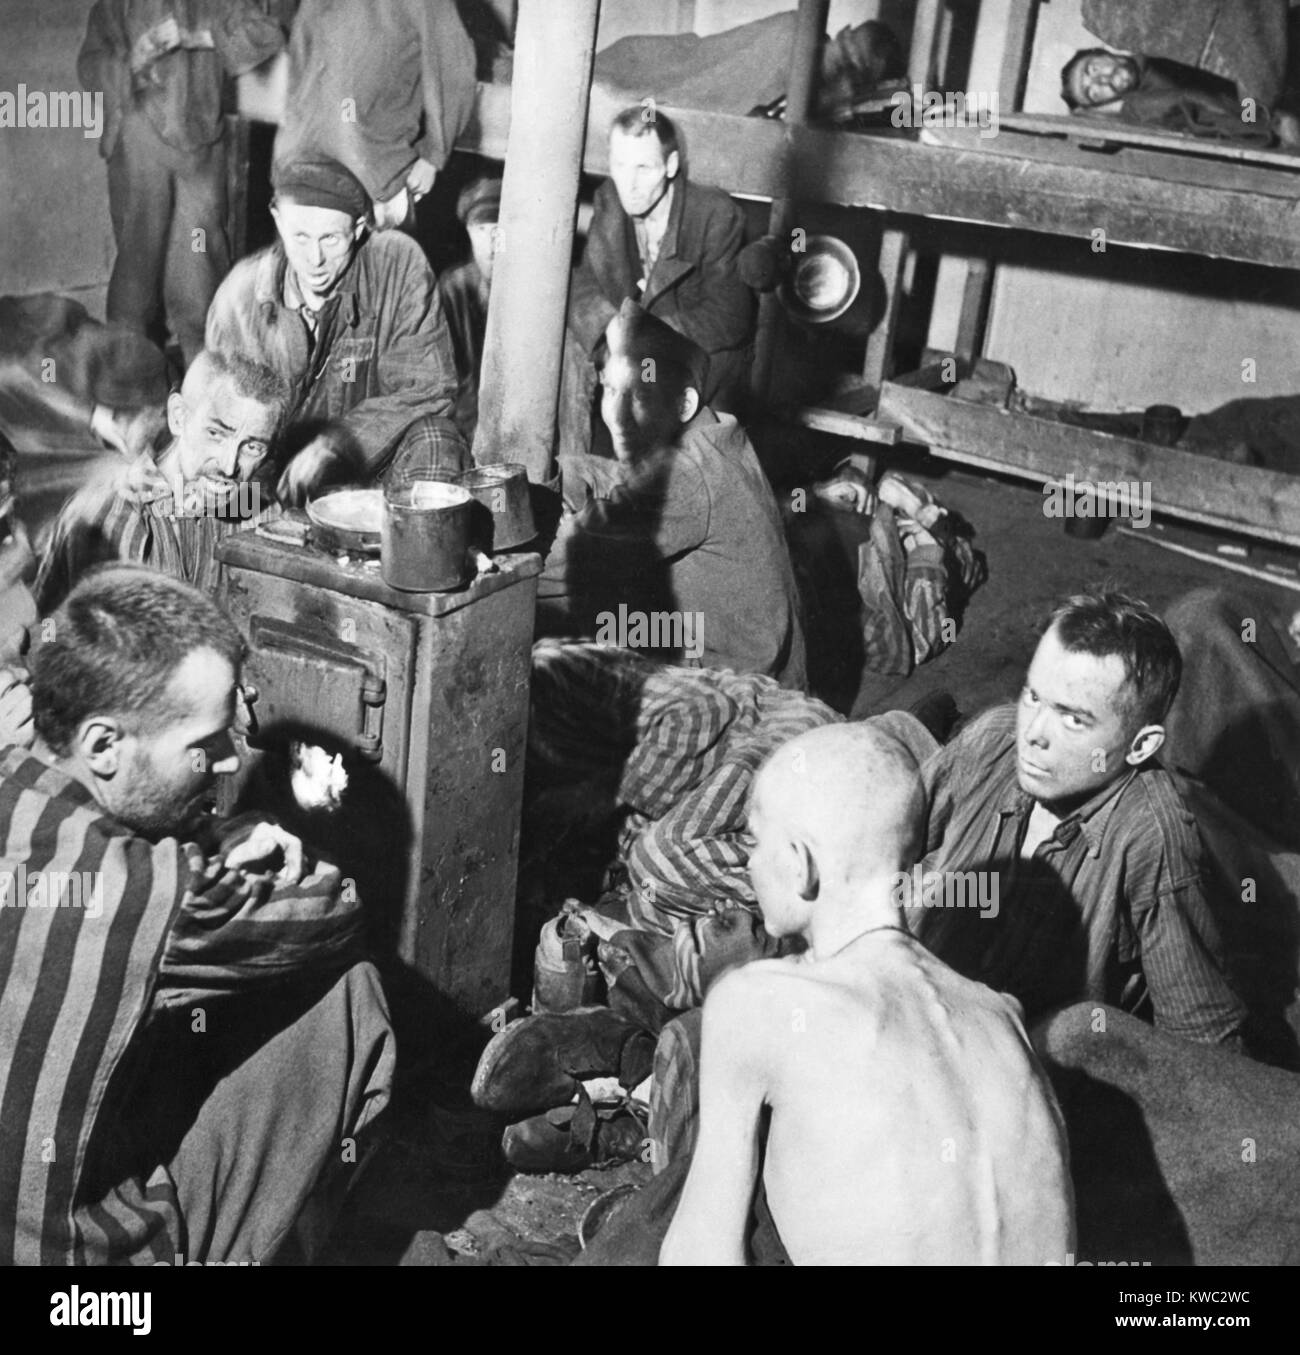 Sandbostel Gefangenenlager überlebenden Sitzen um einen Herd Feuer nach dem Britischen Befreiung, 30. April 1945. Sie waren unter 8000 zivilen und politischen Gefangenen getrennt untergebracht und behandelt werden viel schlimmer als 15.000 alliierte Militärs Gefangene. Der Mann auf dem Stock auf der Rückseite dieses Bildes ist tot, aber die anderen nicht bemerken. (BSLOC 2015 13 12) Stockfoto